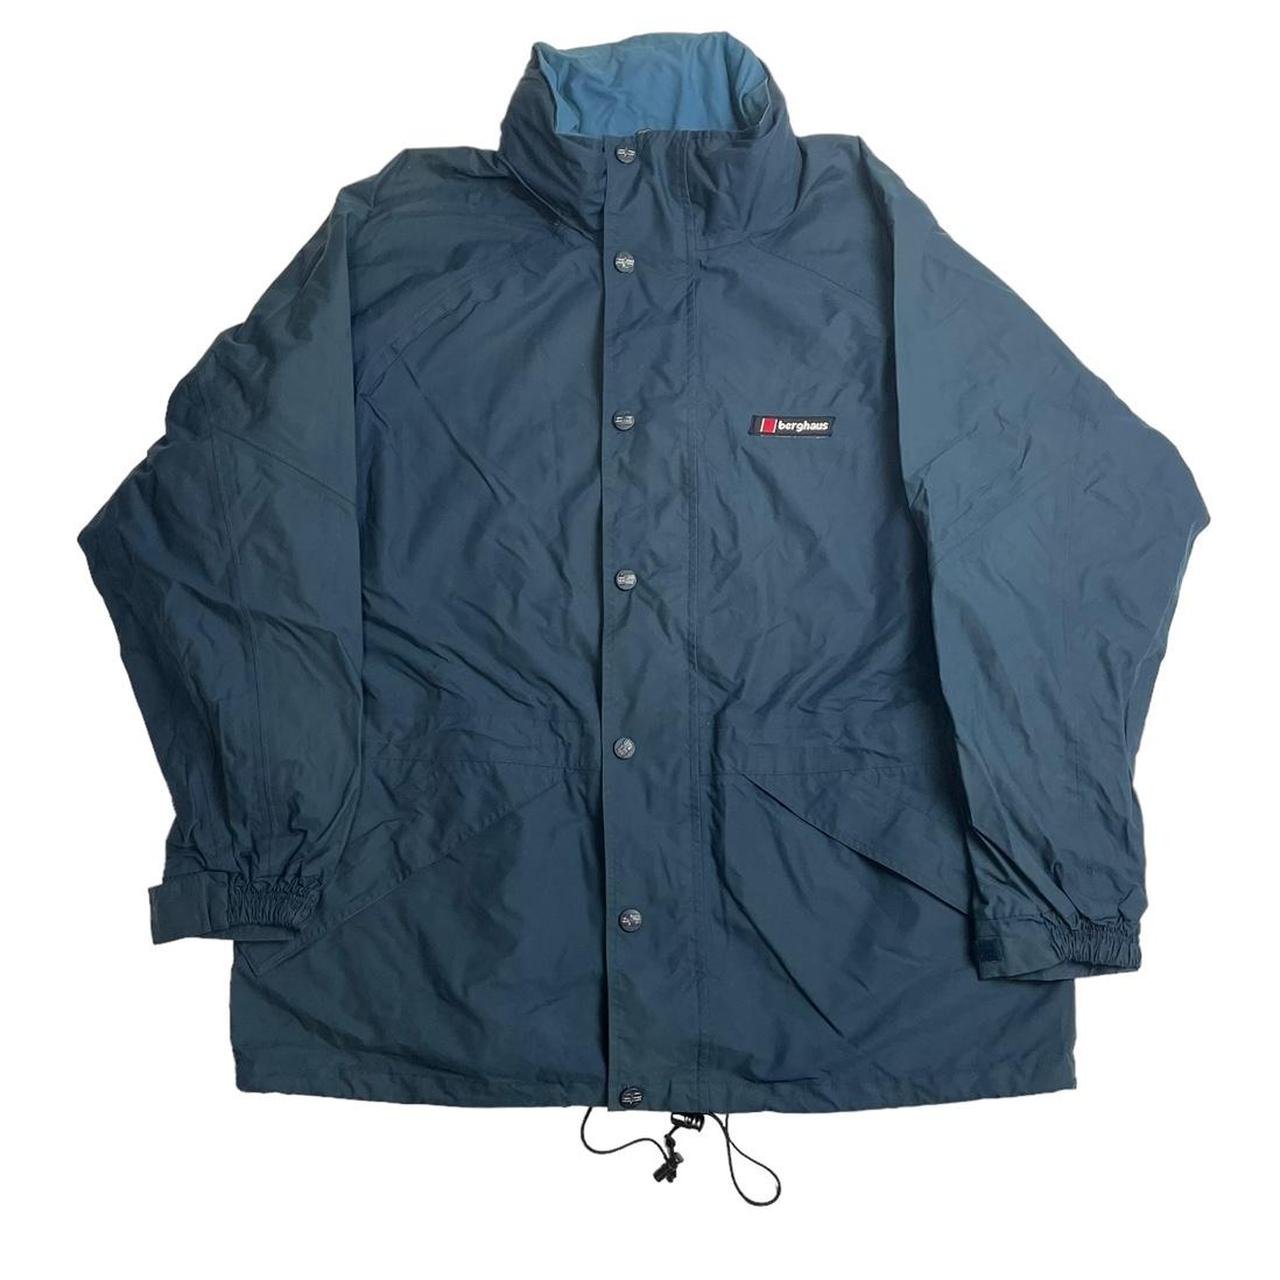 Vintage Berghaus waterproof jacket blue 📌 Our... - Depop